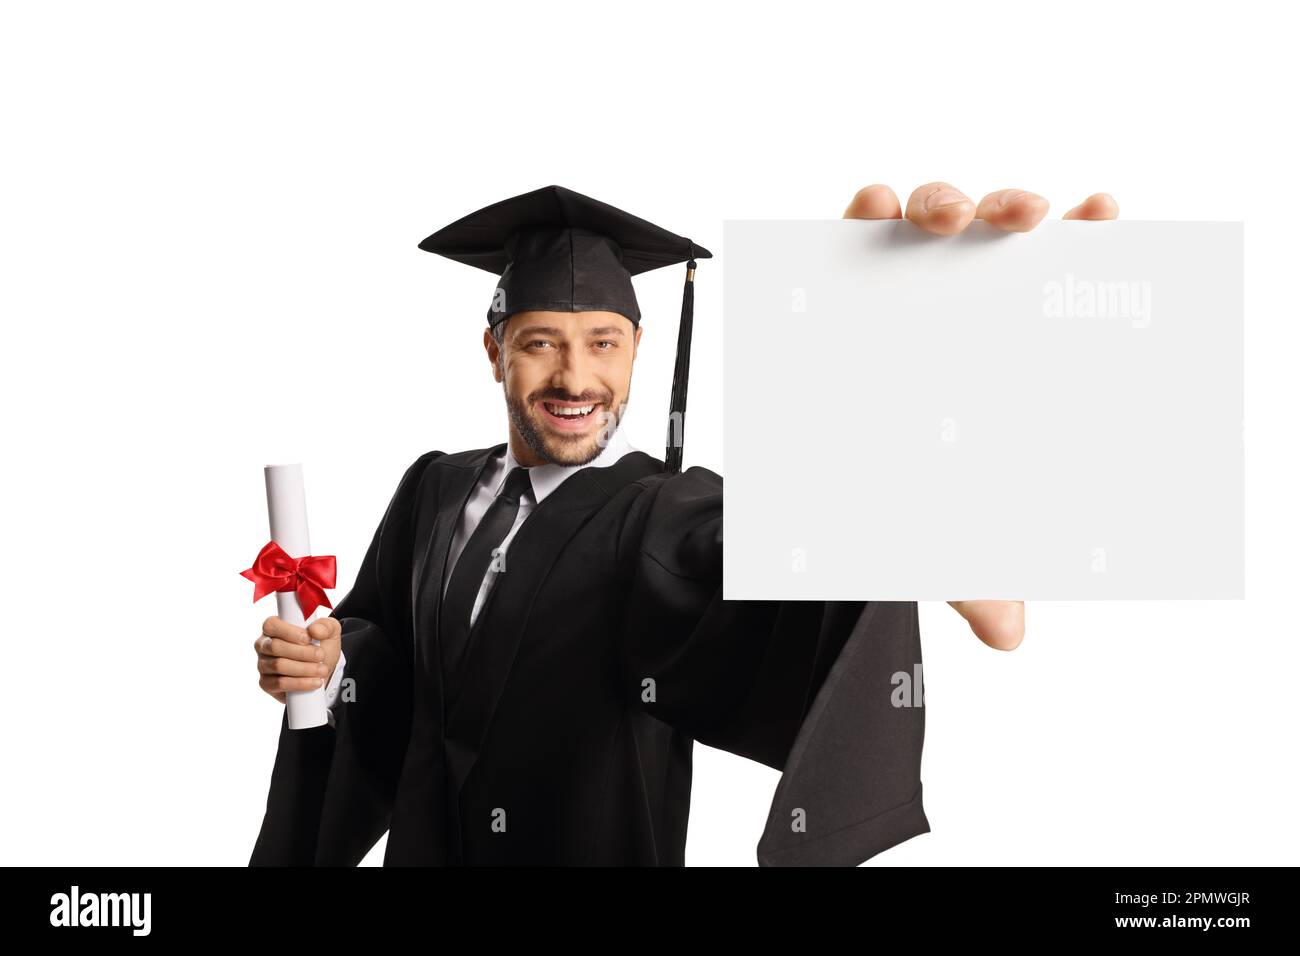 Lächelnder männlicher Student in einem Abschlusskleid mit einem Diplom und einer leeren Karte isoliert auf weißem Hintergrund Stockfoto